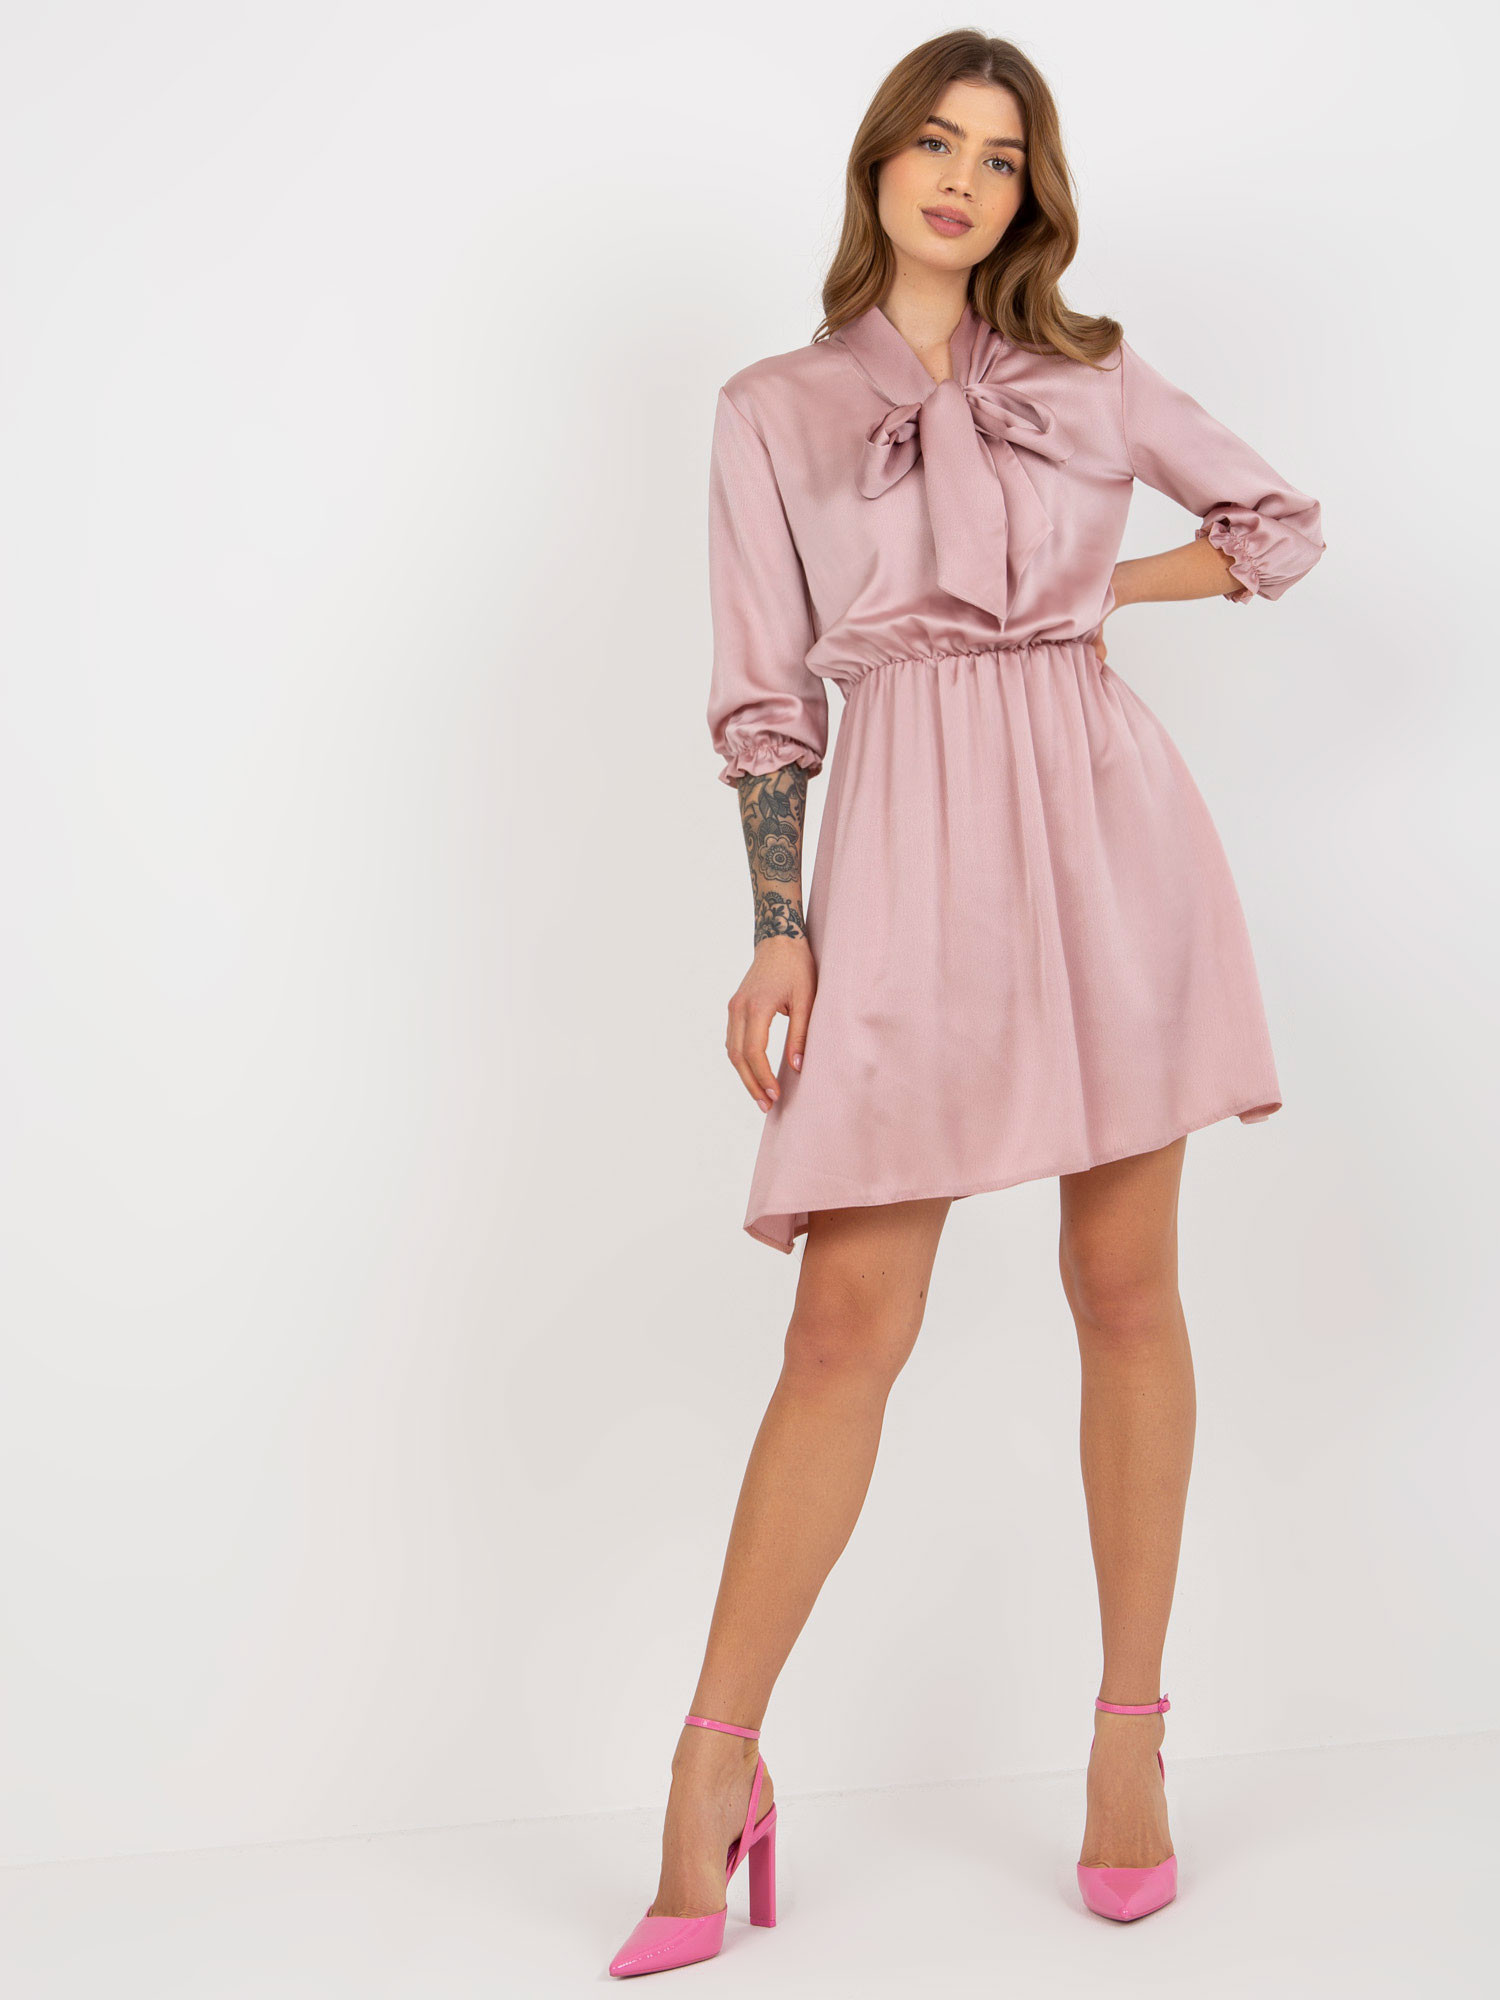 Dámské šaty LK SK 507062.42 růžové - FPrice růžova 42